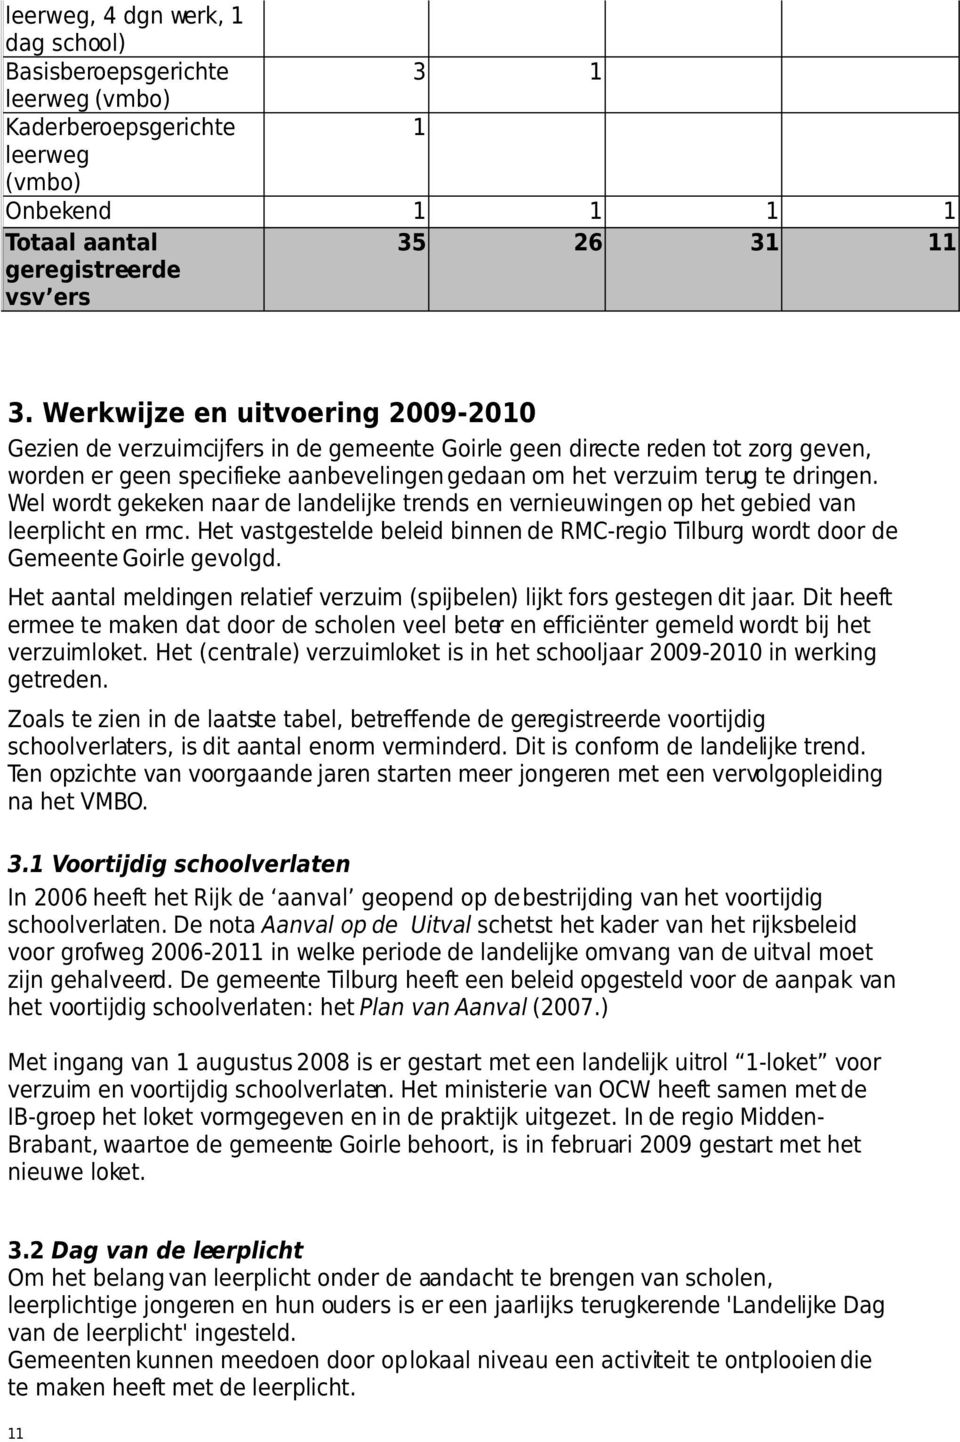 Wel wordt gekeken naar de landelijke trends en vernieuwingen op het gebied van leerplicht en rmc. Het vastgestelde beleid binnen de RMC-regio Tilburg wordt door de Gemeente Goirle gevolgd.